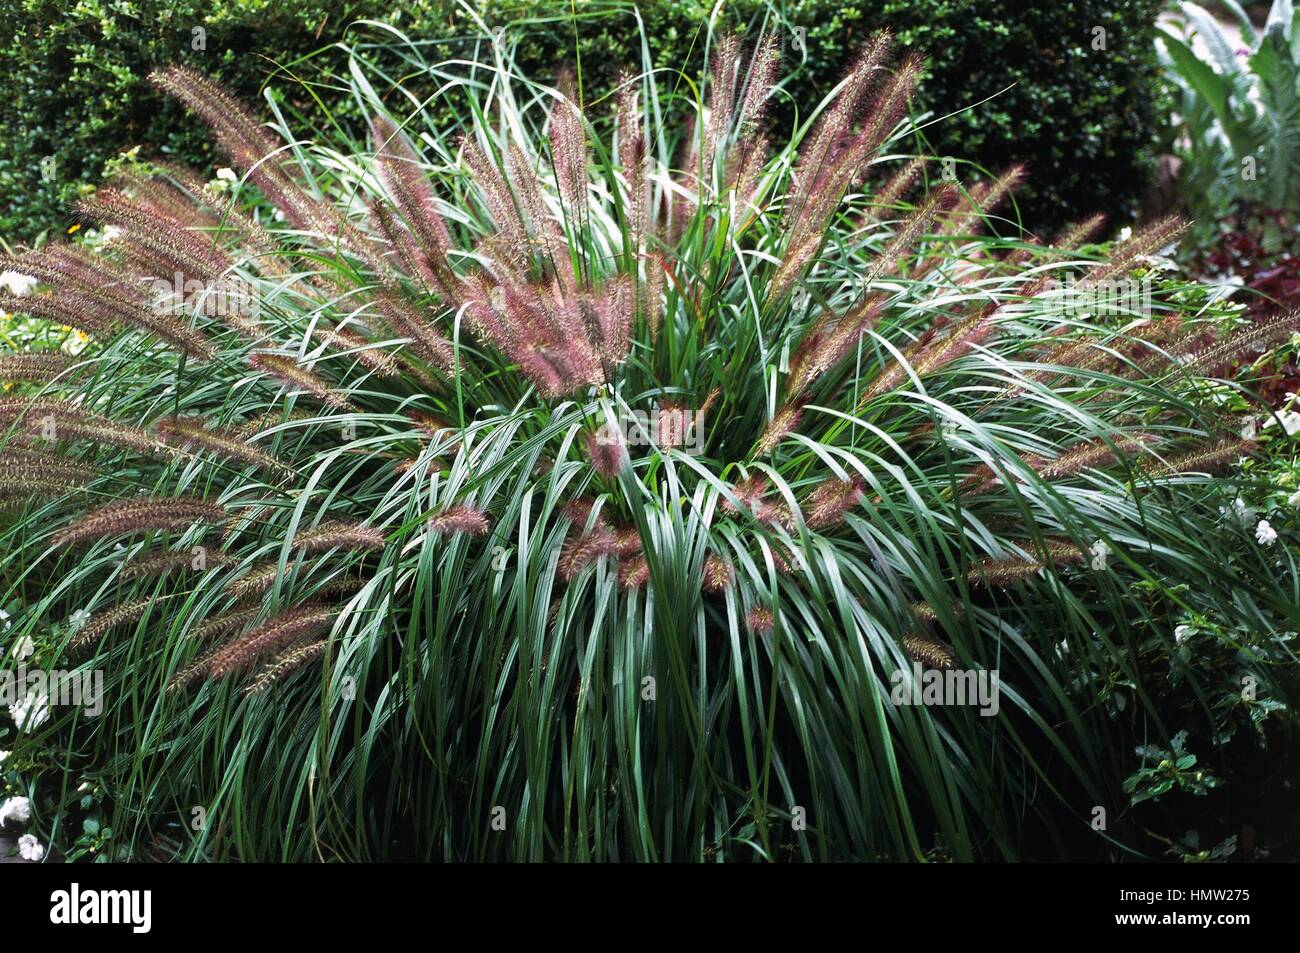 Fountain grass (Pennisetum alopecuroides Moudry), Poaceae. Stock Photo